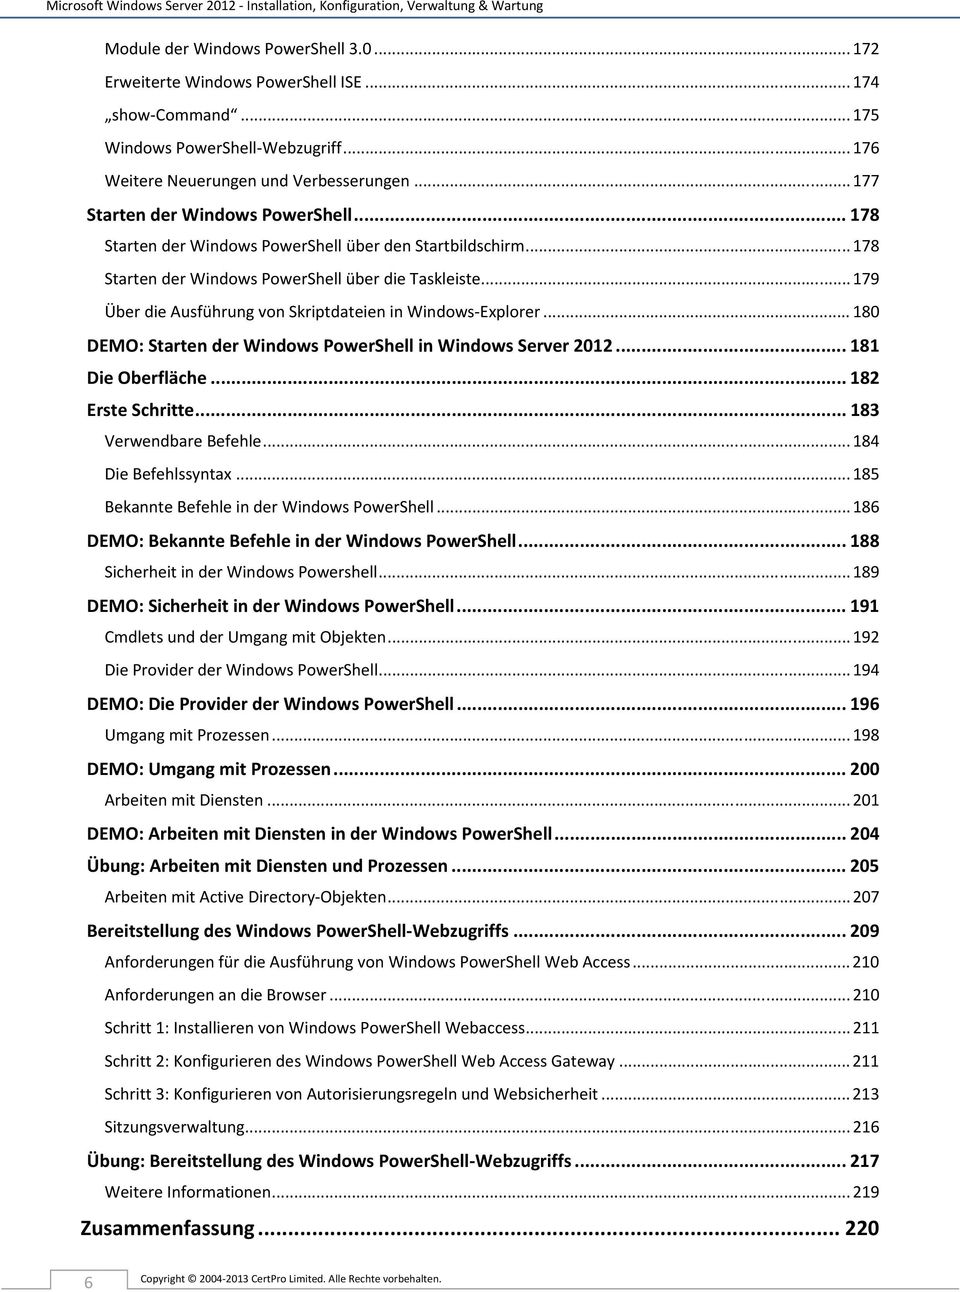 .. 178 Starten der Windows PowerShell über die Taskleiste... 179 Über die Ausführung von Skriptdateien in Windows-Explorer... 180 DEMO: Starten der Windows PowerShell in Windows Server 2012.